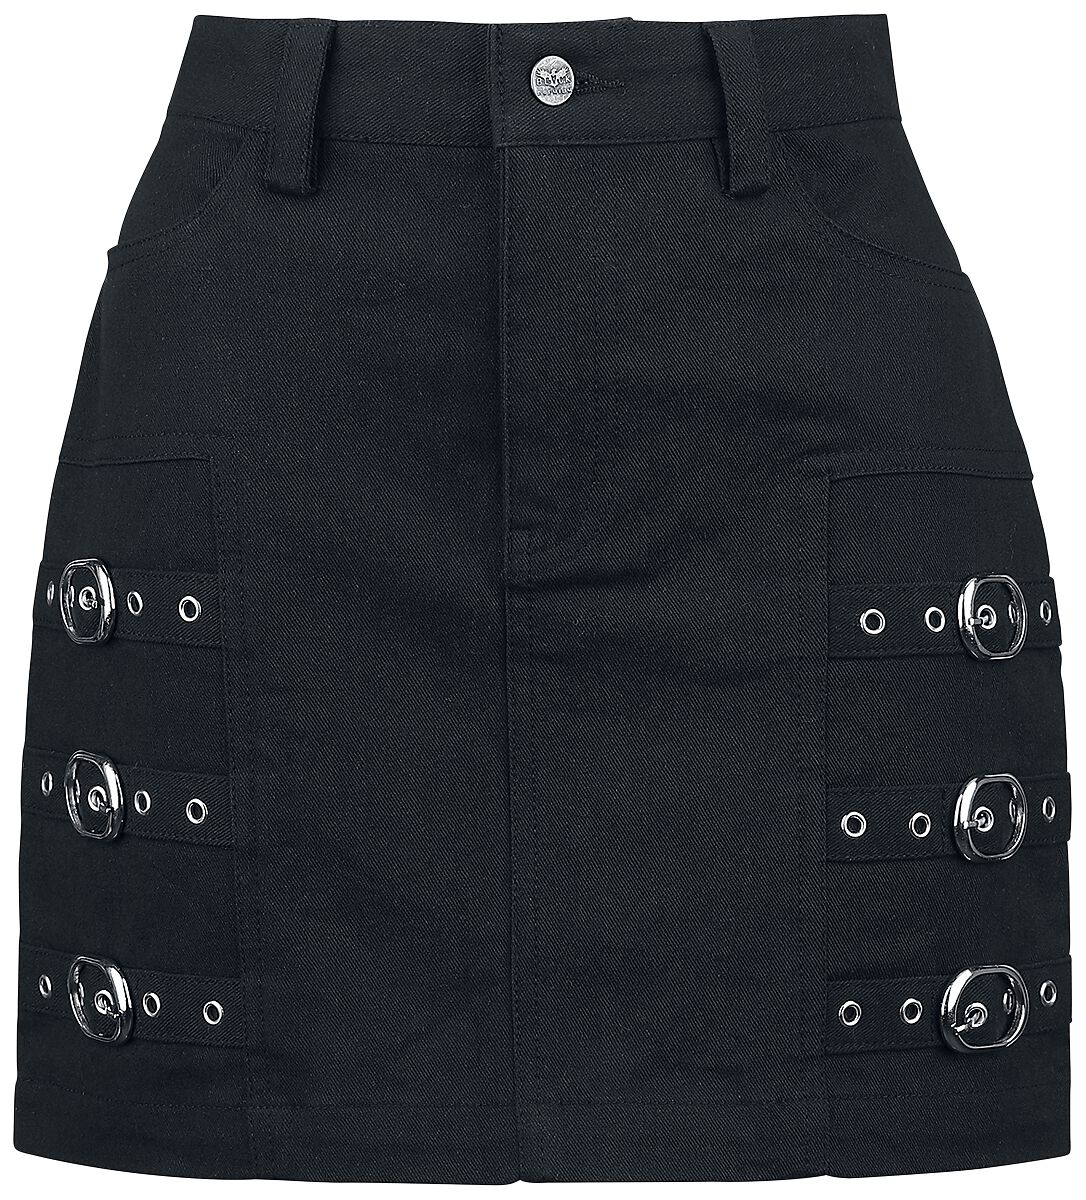 Black Premium by EMP Kurzer Rock - Short Skirt with decorative Buckles - S bis XXL - für Damen - Größe S - schwarz